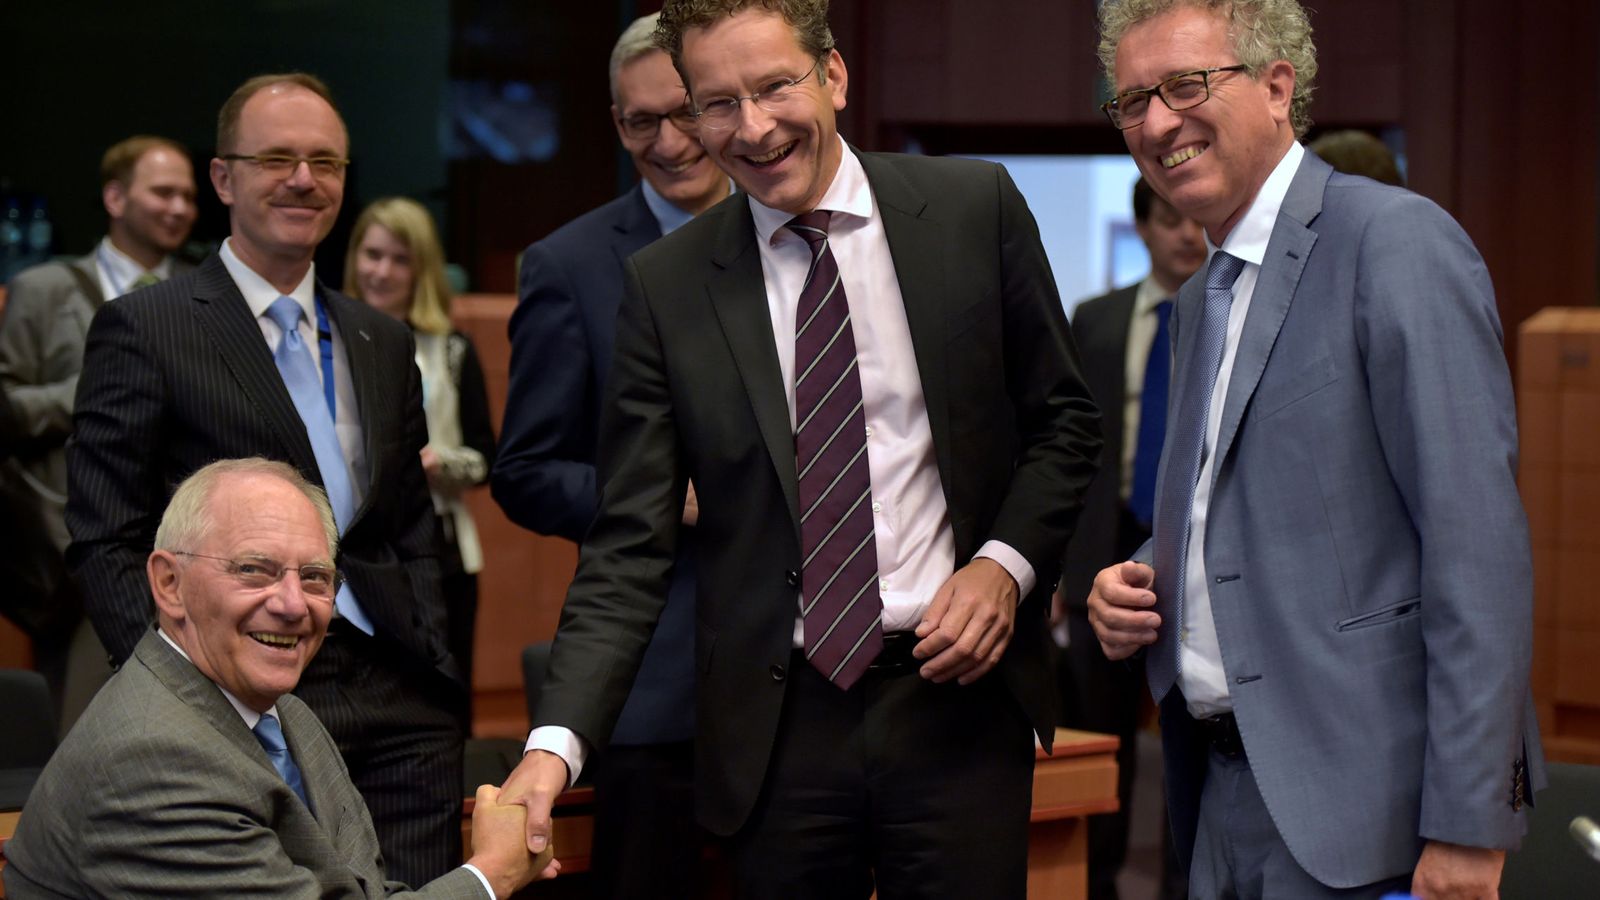 Foto: El ministro de finanzas alemán, Wolfgang Schauble, de risas con el presidente del Eurogrupo, Jeroen Dijsselbloem, y con Pierre Gramegna, ministro de finanzas de Luxemburgo. (Reuters/Eric Vidal)